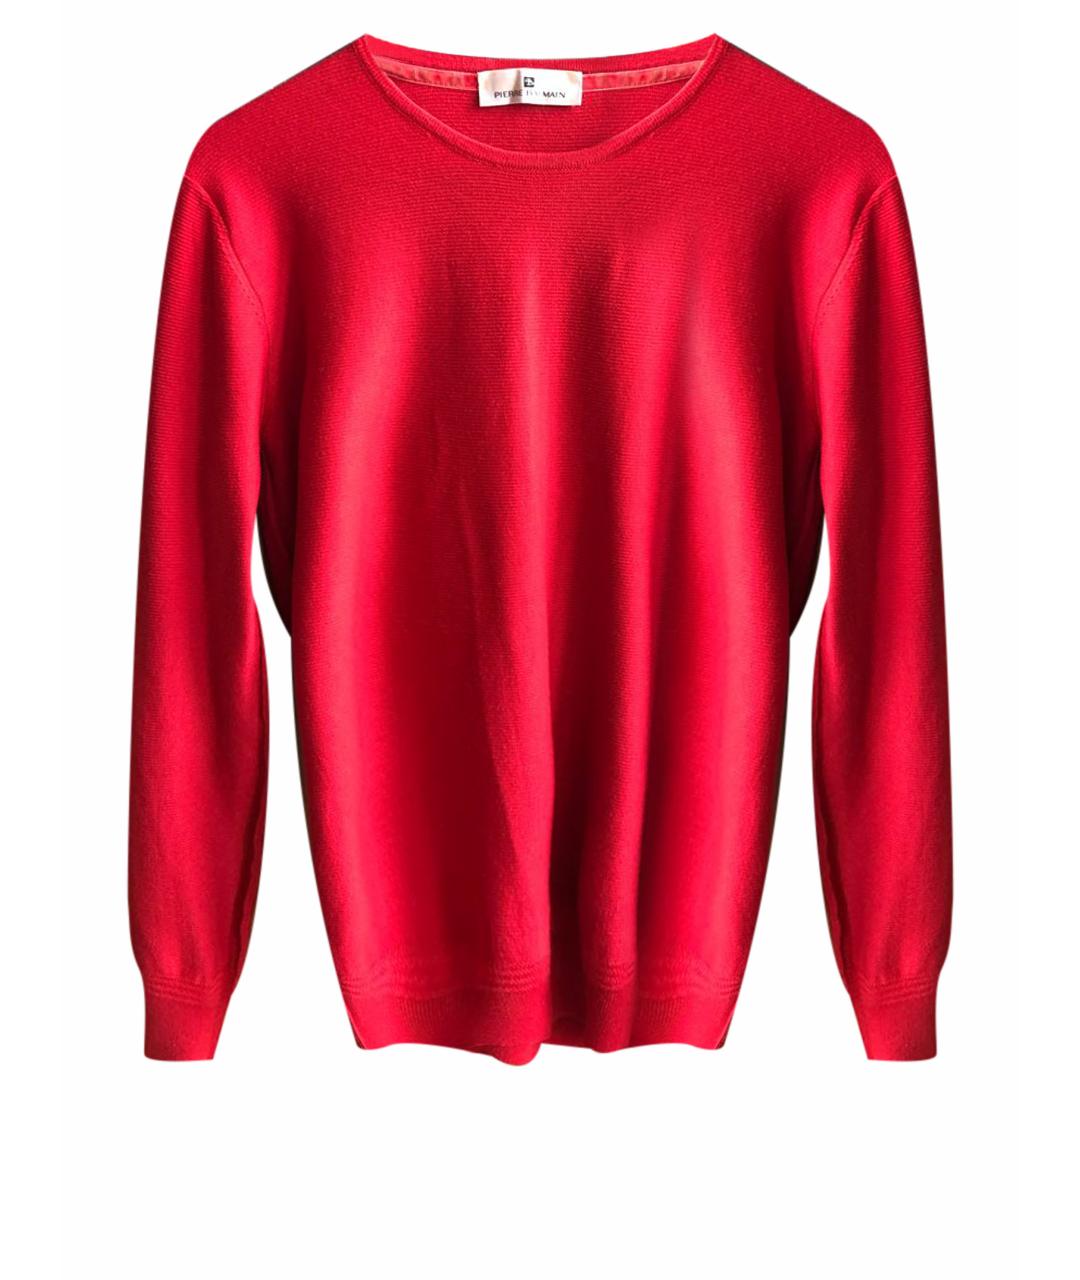 PIERRE BALMAIN Красный шерстяной джемпер / свитер, фото 1